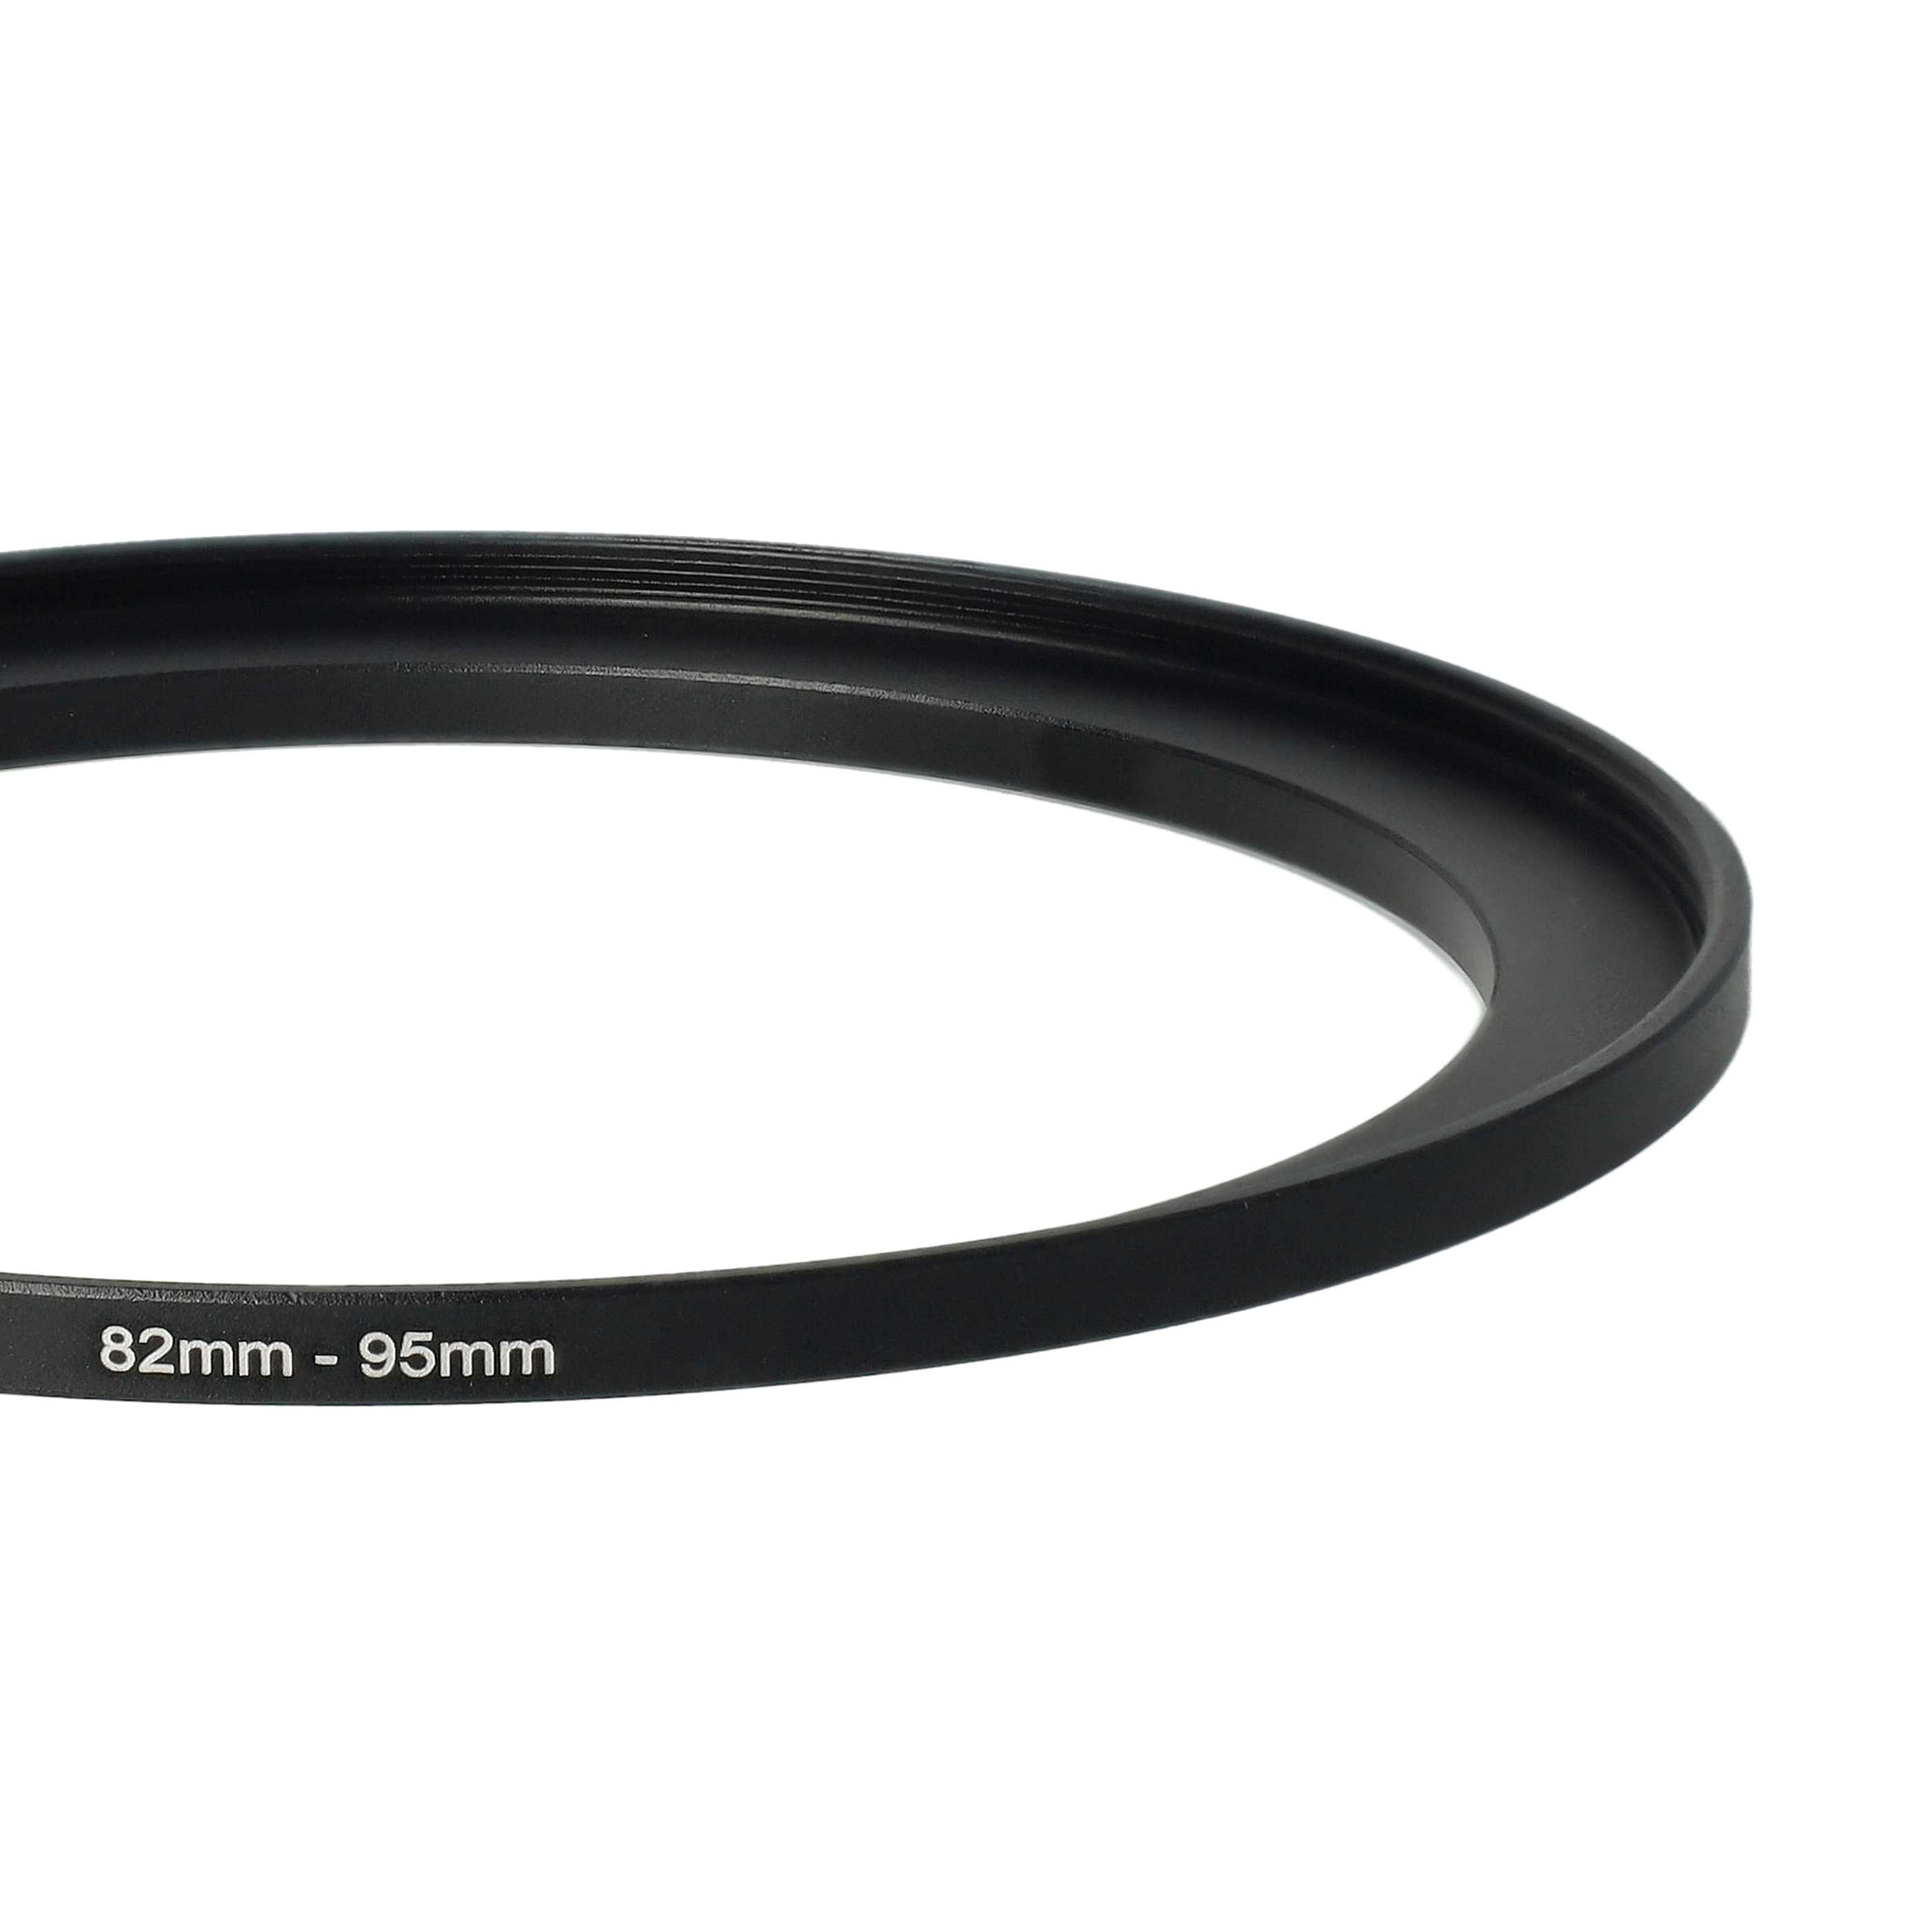 Step-Up-Ring Adapter 82 mm auf 95 mm passend für diverse Kamera-Objektive - Filteradapter